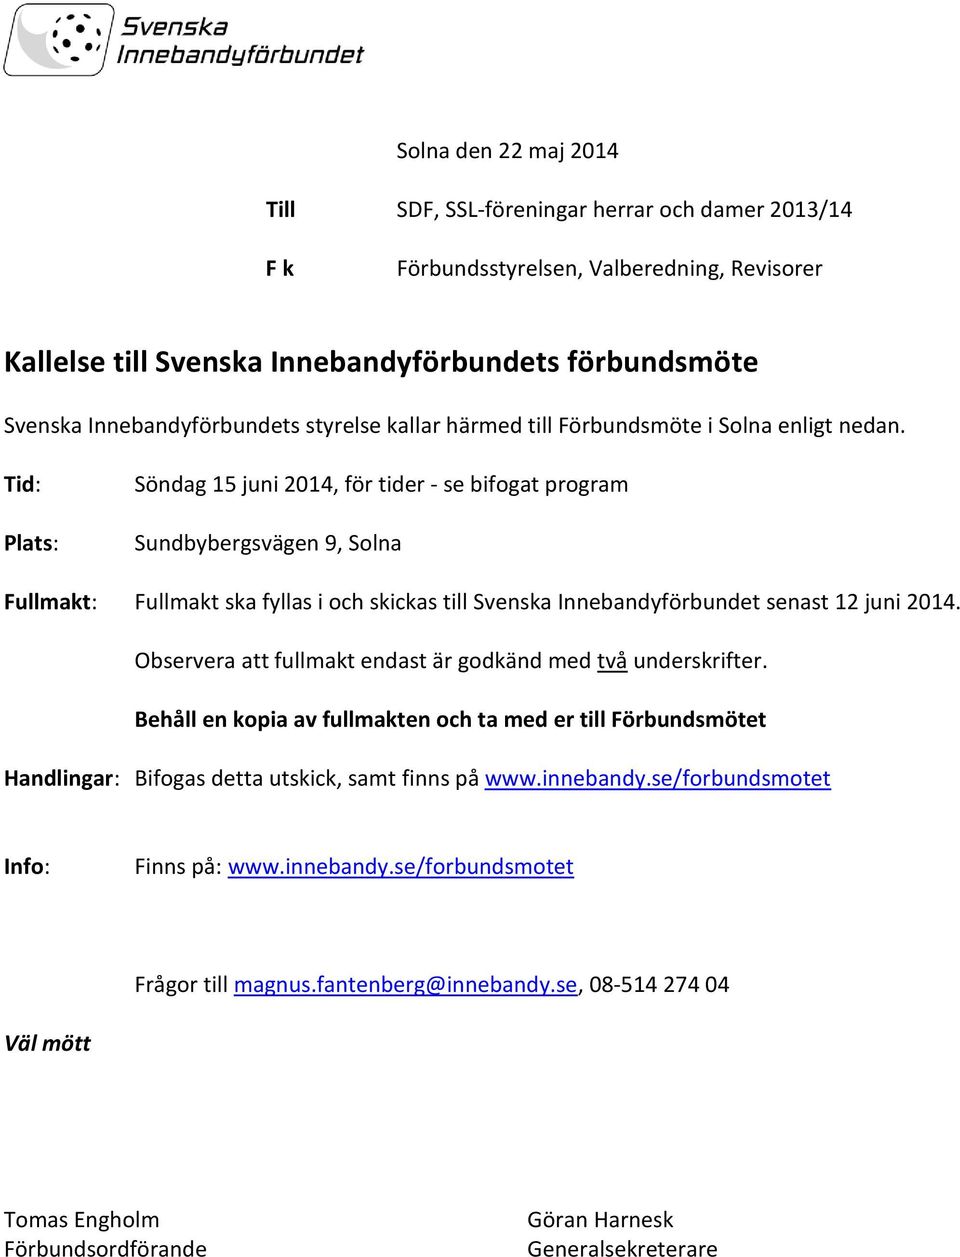 Tid: Plats: Söndag 15 juni 2014, för tider - se bifogat program Sundbybergsvägen 9, Solna Fullmakt: Fullmakt ska fyllas i och skickas till Svenska Innebandyförbundet senast 12 juni 2014.